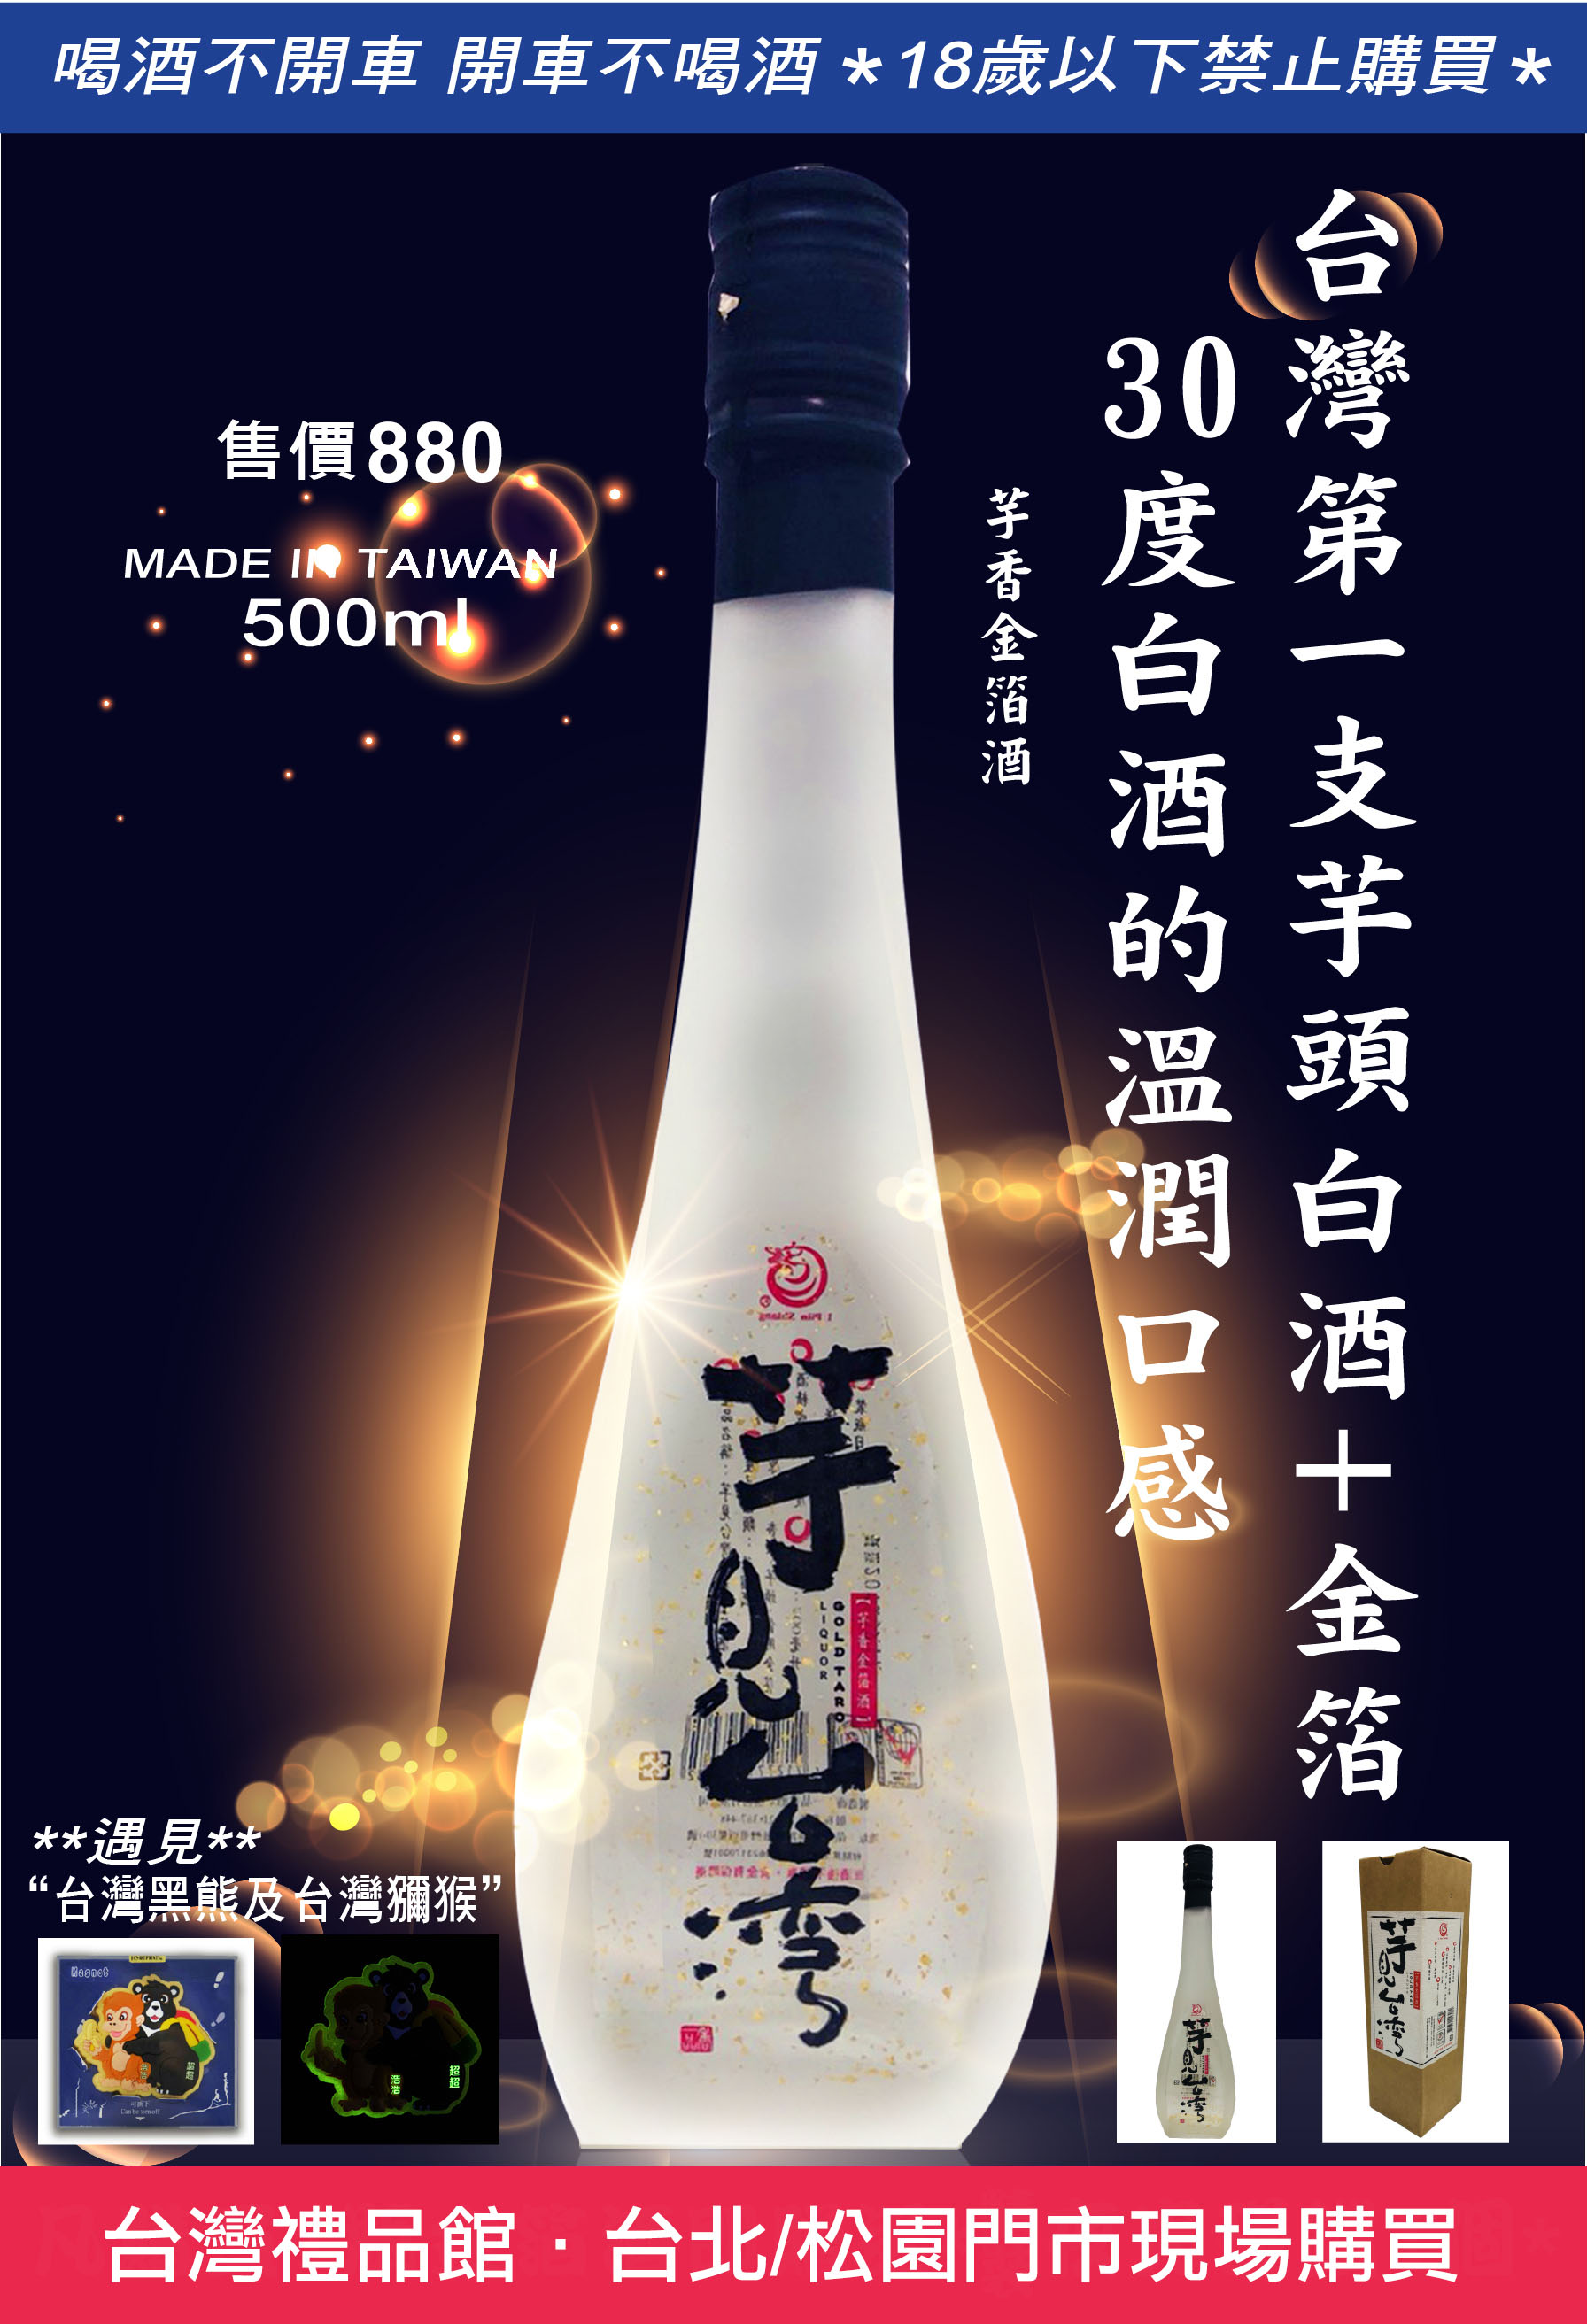 【 台灣優質酒類推薦 】芋見台灣 - 芋香金箔酒 Taiwan taro liquor